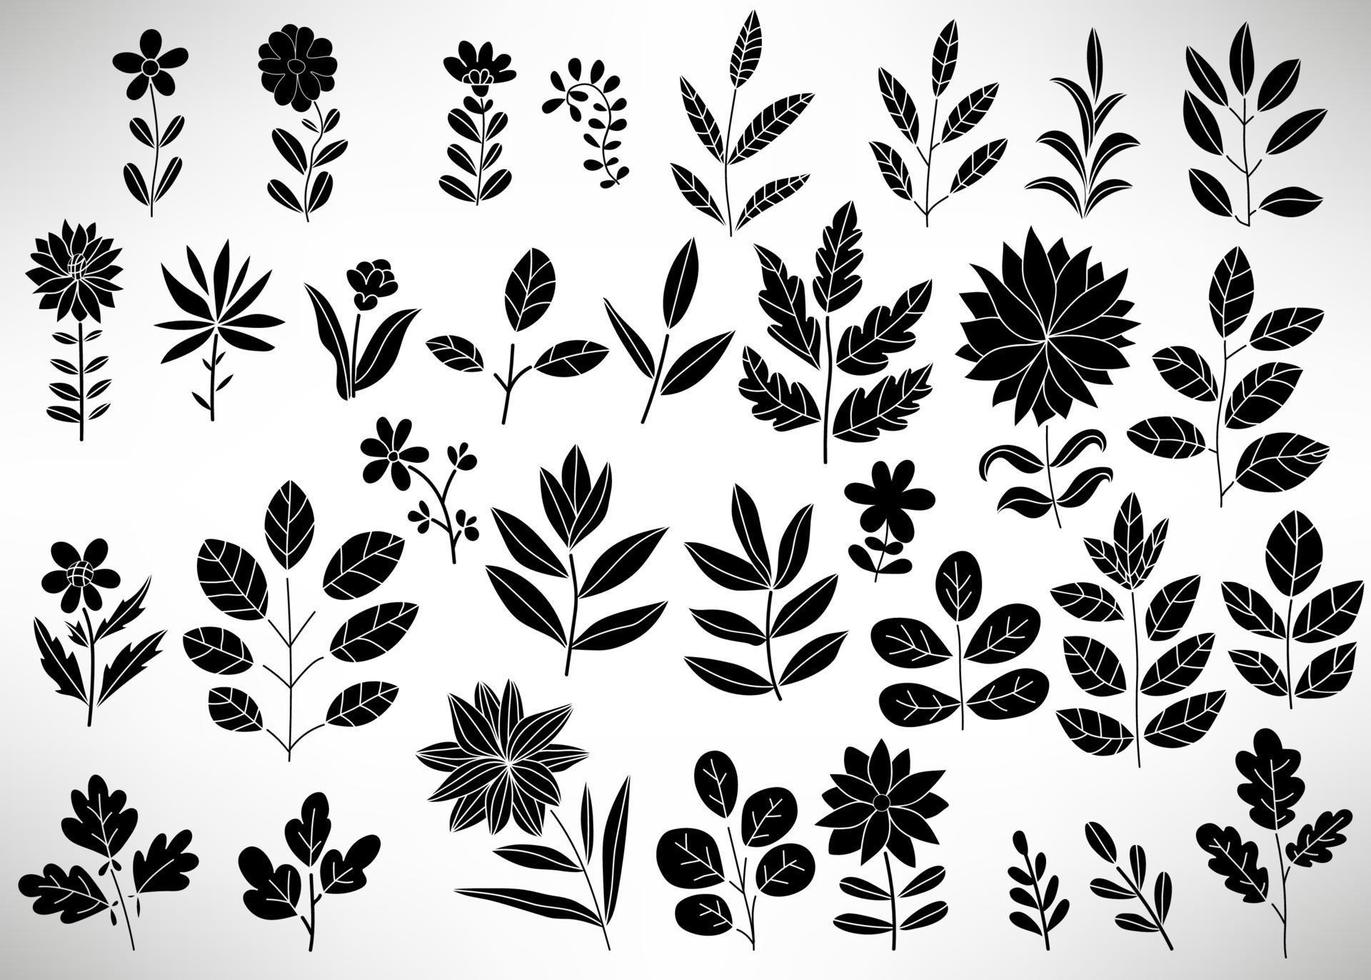 conjunto floral de elementos florales dibujados a mano negro, rama de árbol, arbusto, planta, hojas, flores, ramas, pétalos aislados en blanco. colección de florecer elementos para el diseño. vector